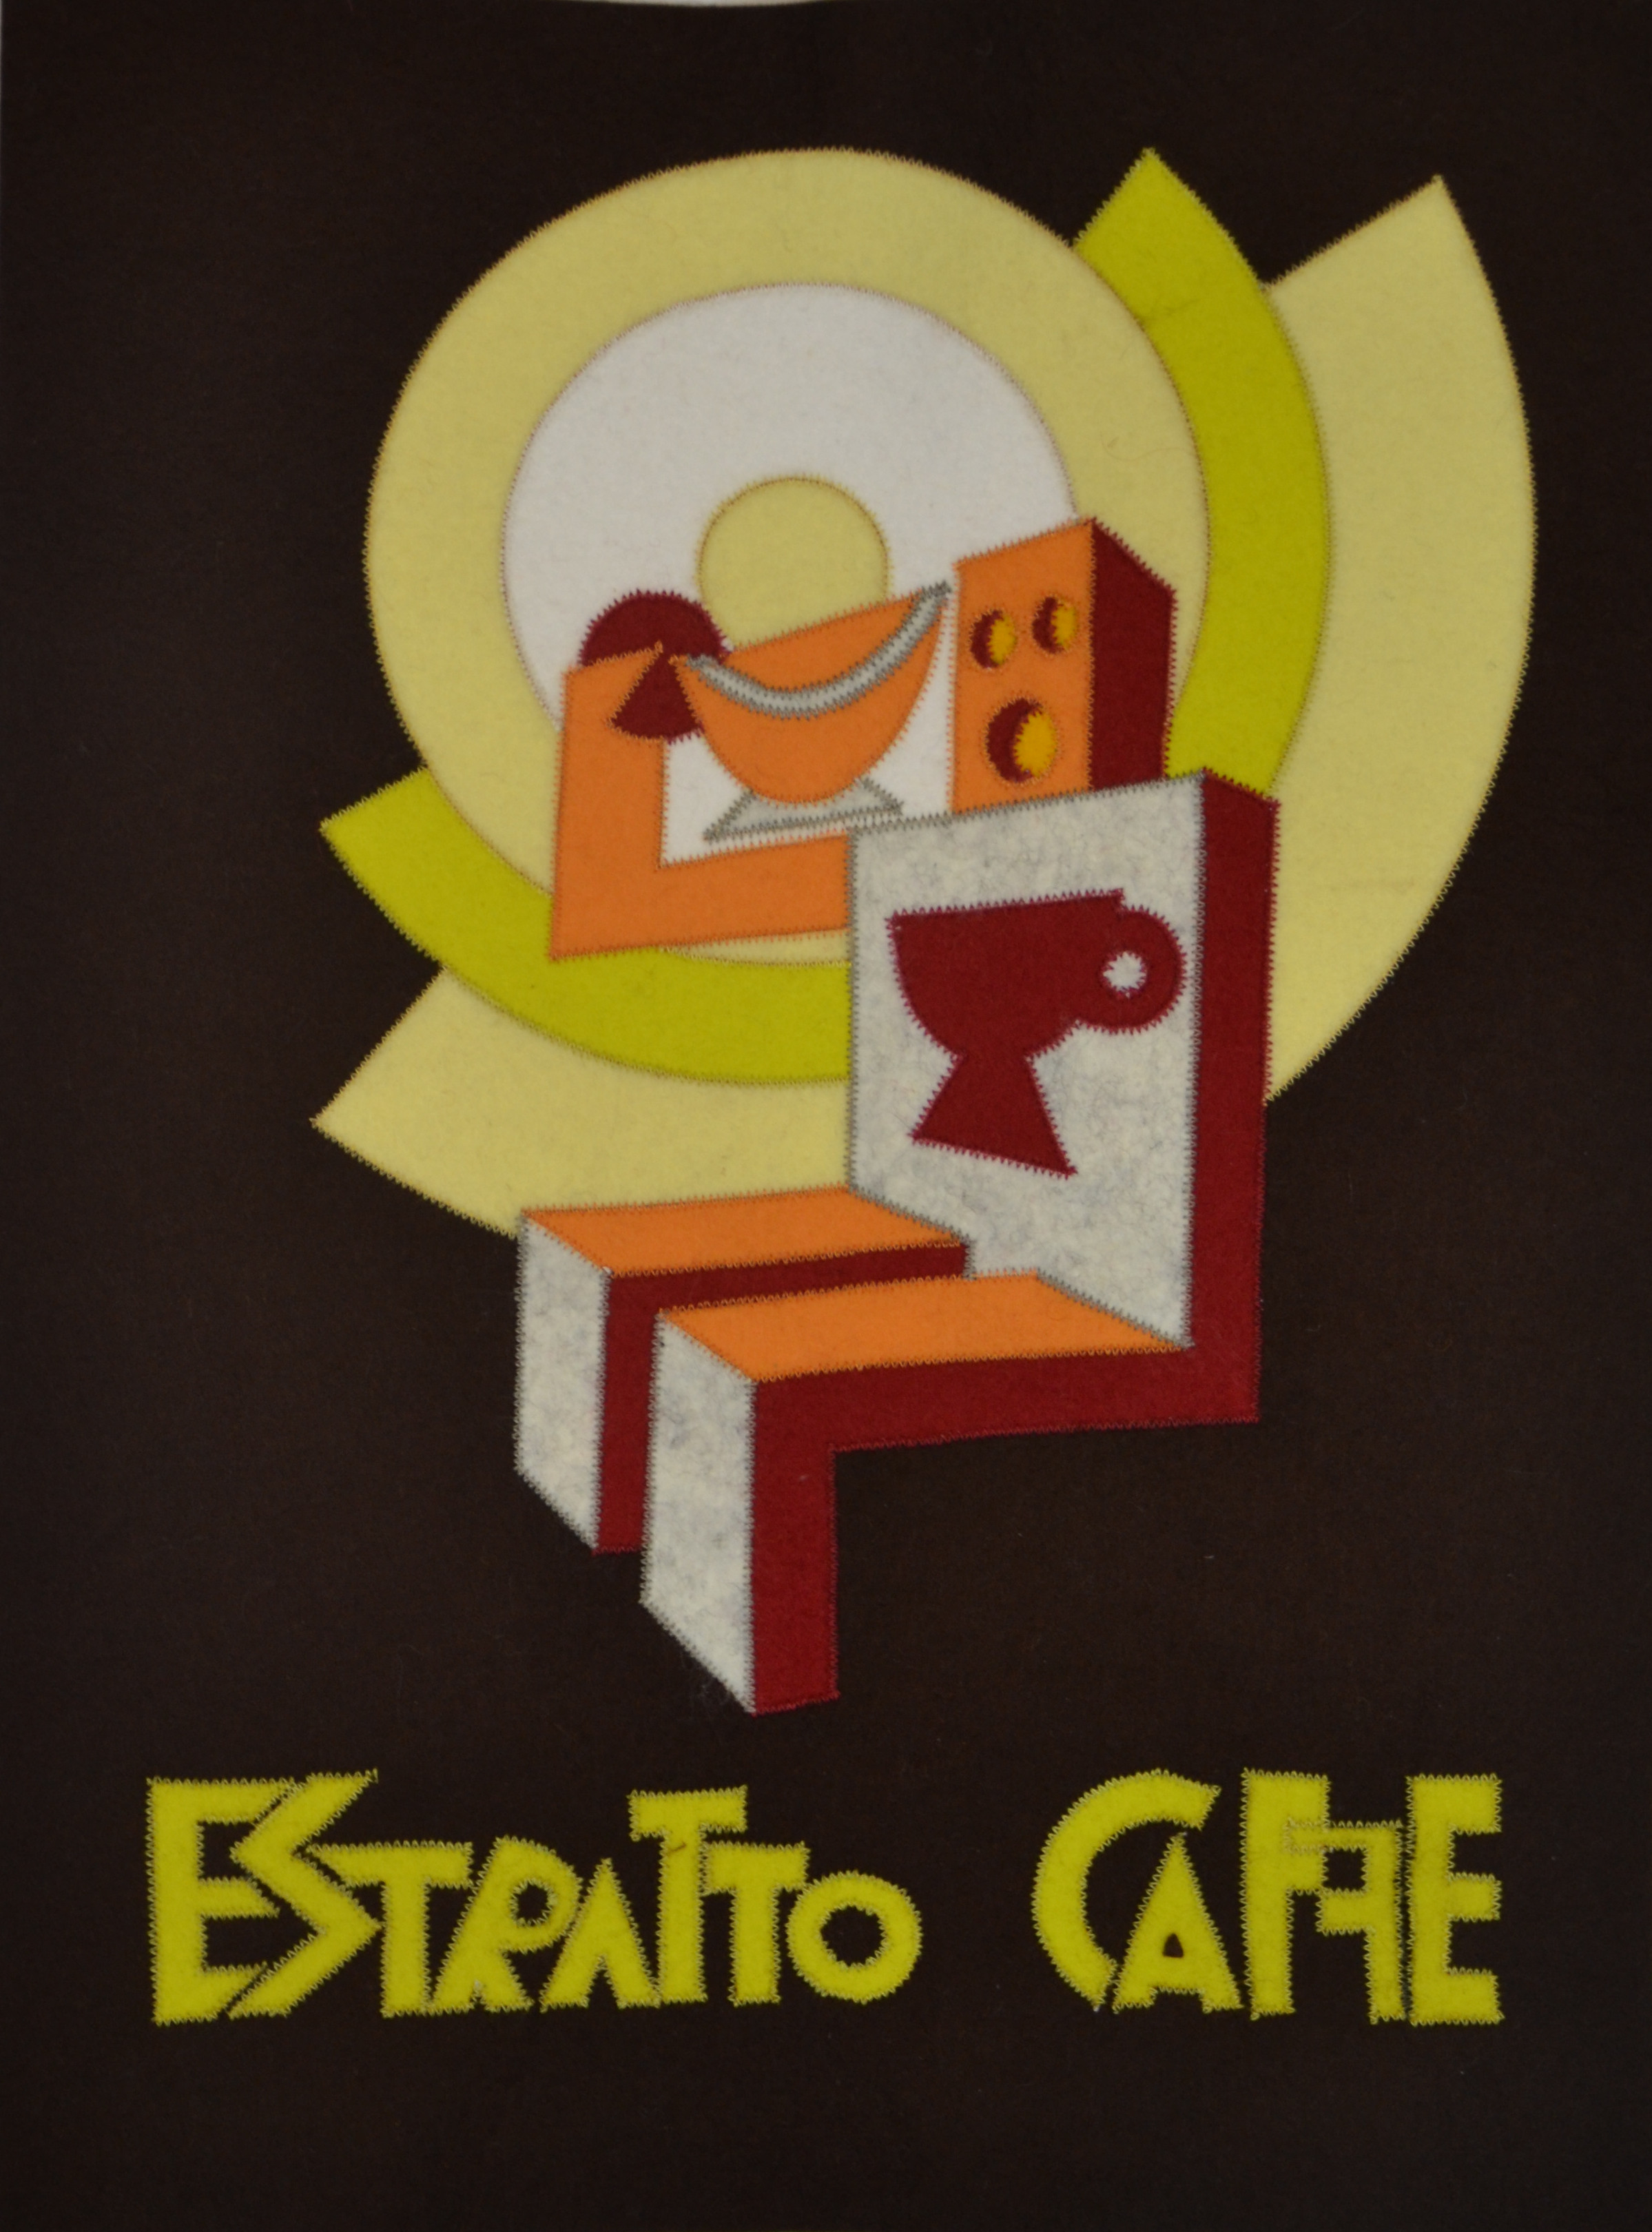 Estratto Caffé T23065